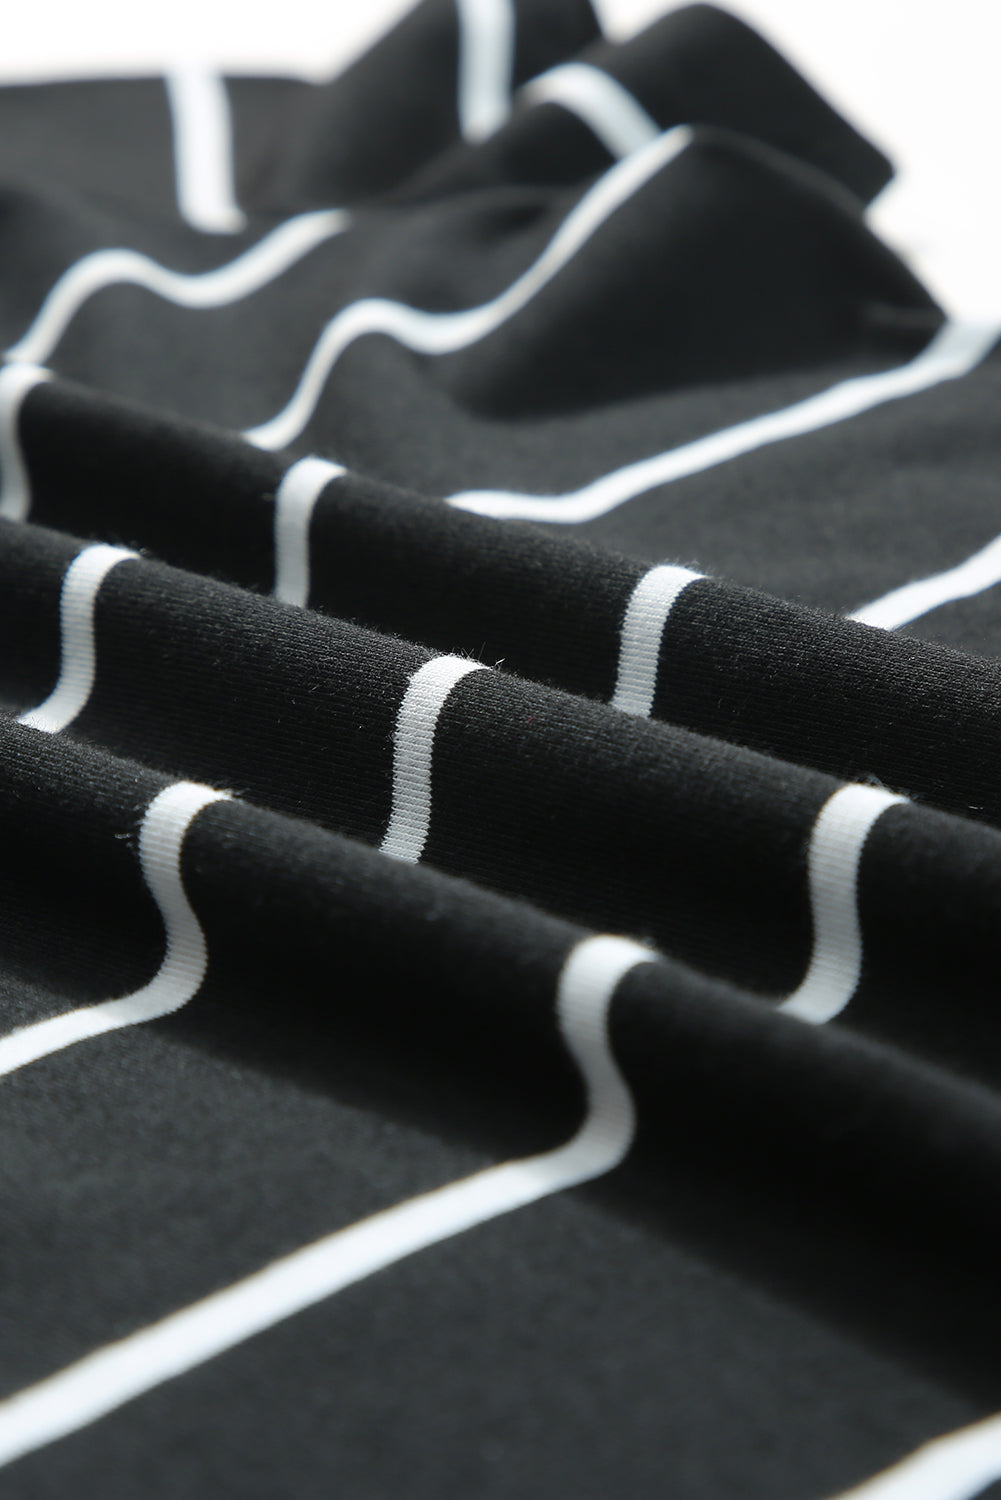 T-shirt noir imprimé à rayures et col rond